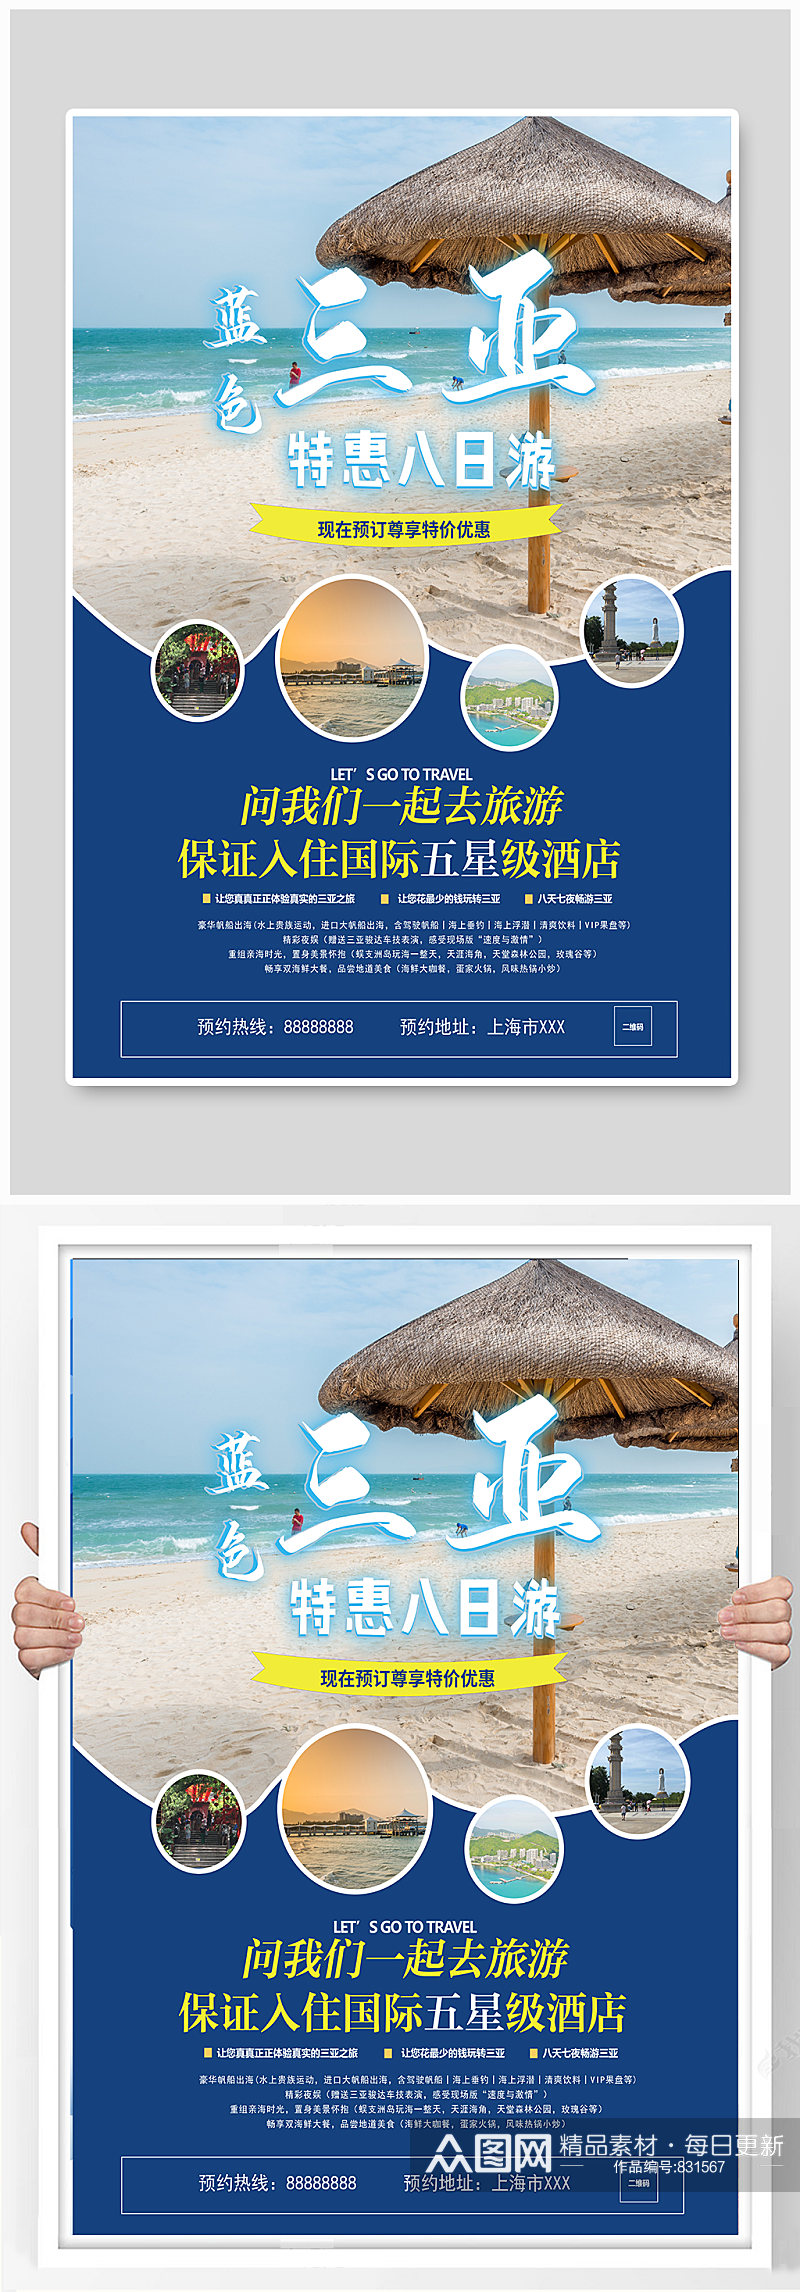 三亚冬季旅游促销海报素材